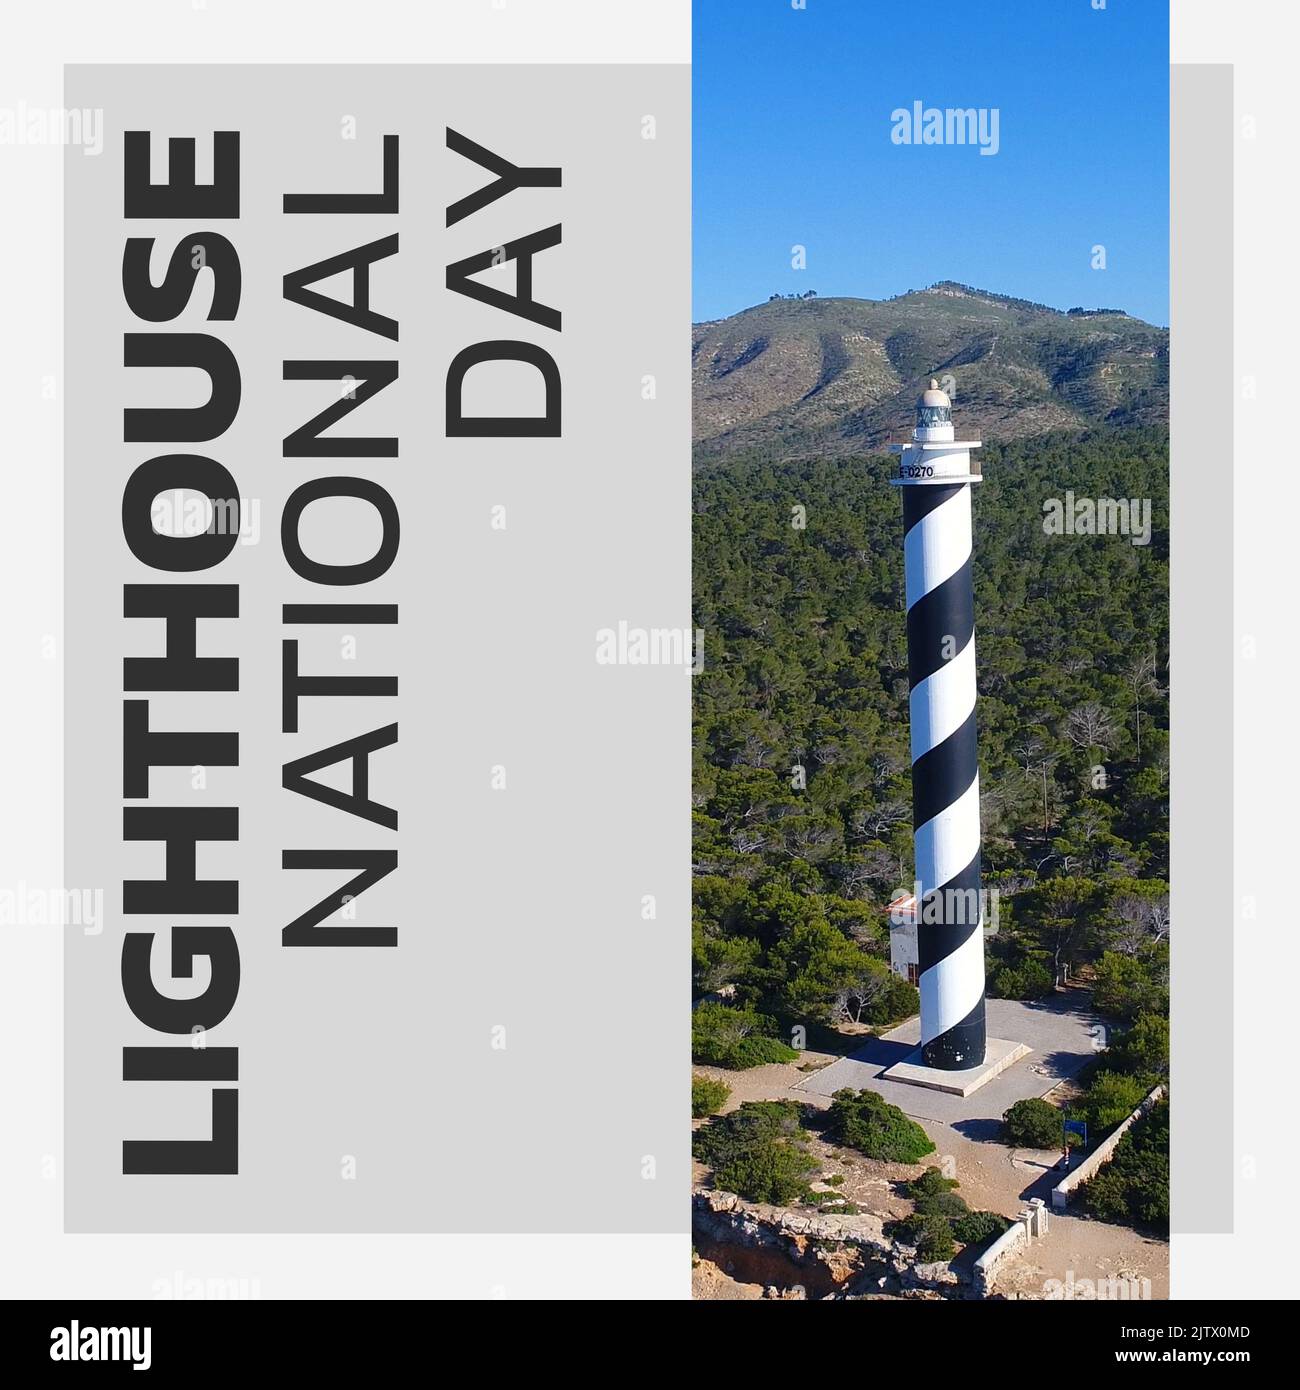 Zusammensetzung aus Leuchtturm Nationaltext und Blick auf Leuchtturm und Berg gegen klaren blauen Himmel Stockfoto